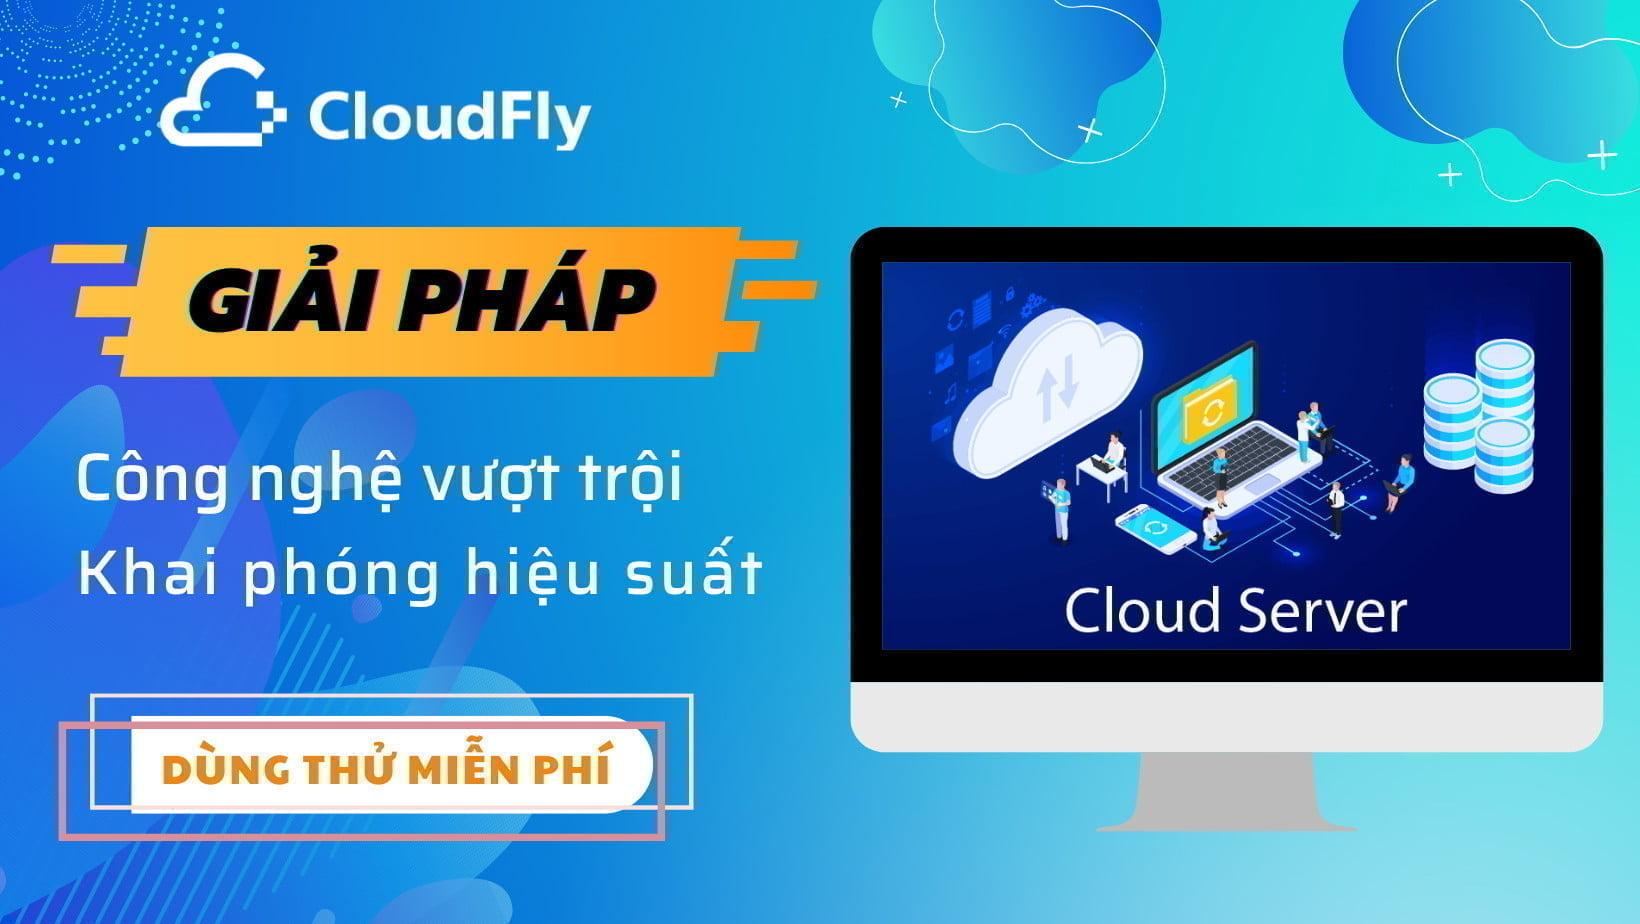 cloudfly cung cấp snapshot và backup trong máy chủ ảo